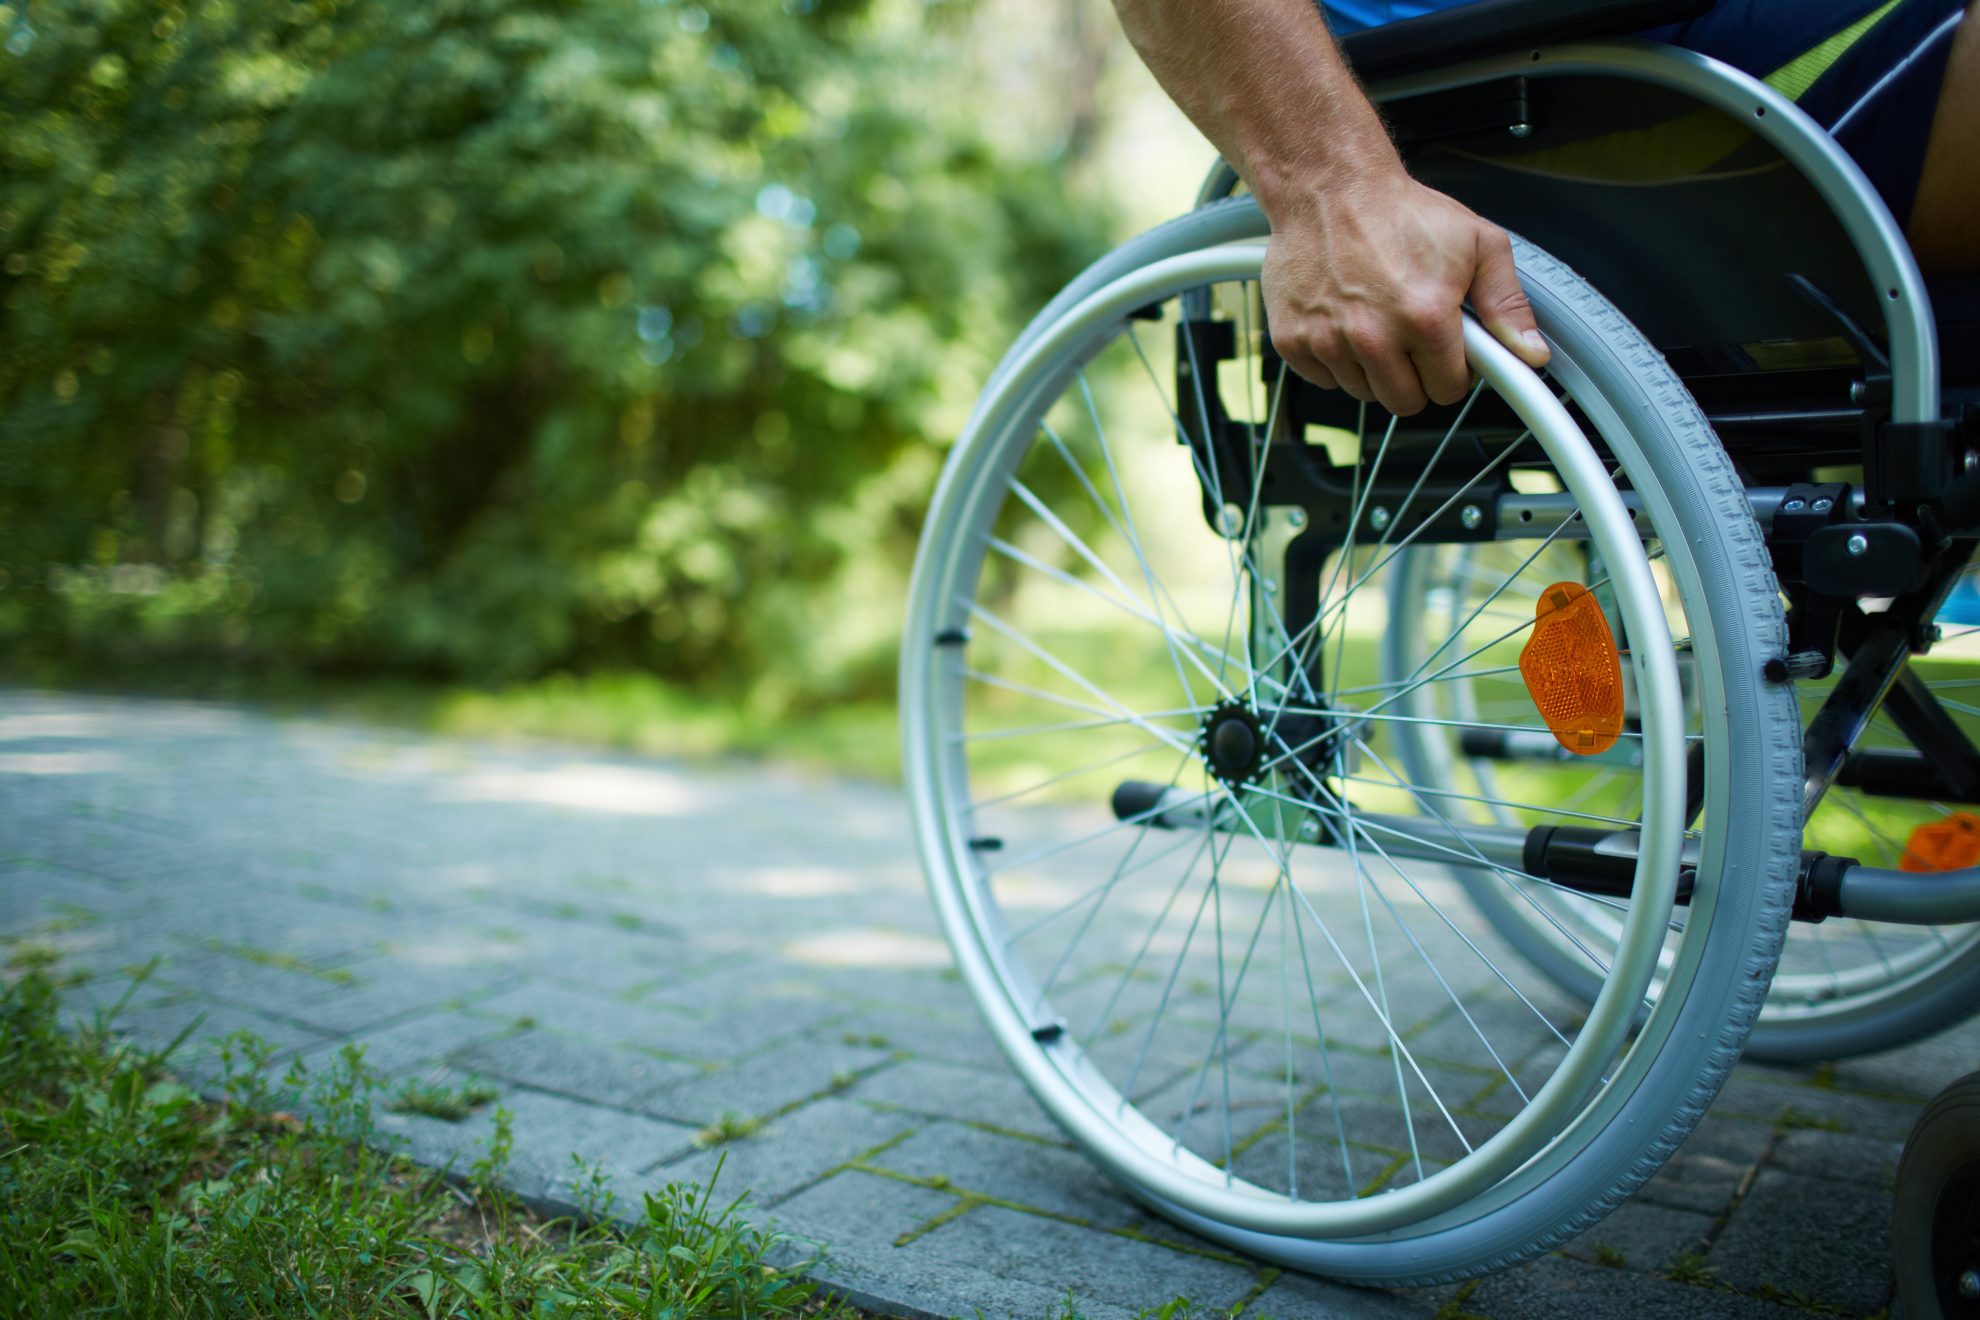 Mann fährt auf einem Rollstuhl auf einem Gehweg. Zu sehen ist vor allem ein Rad und eine Hand. Im Hintergrund zu sehen ist Grün.